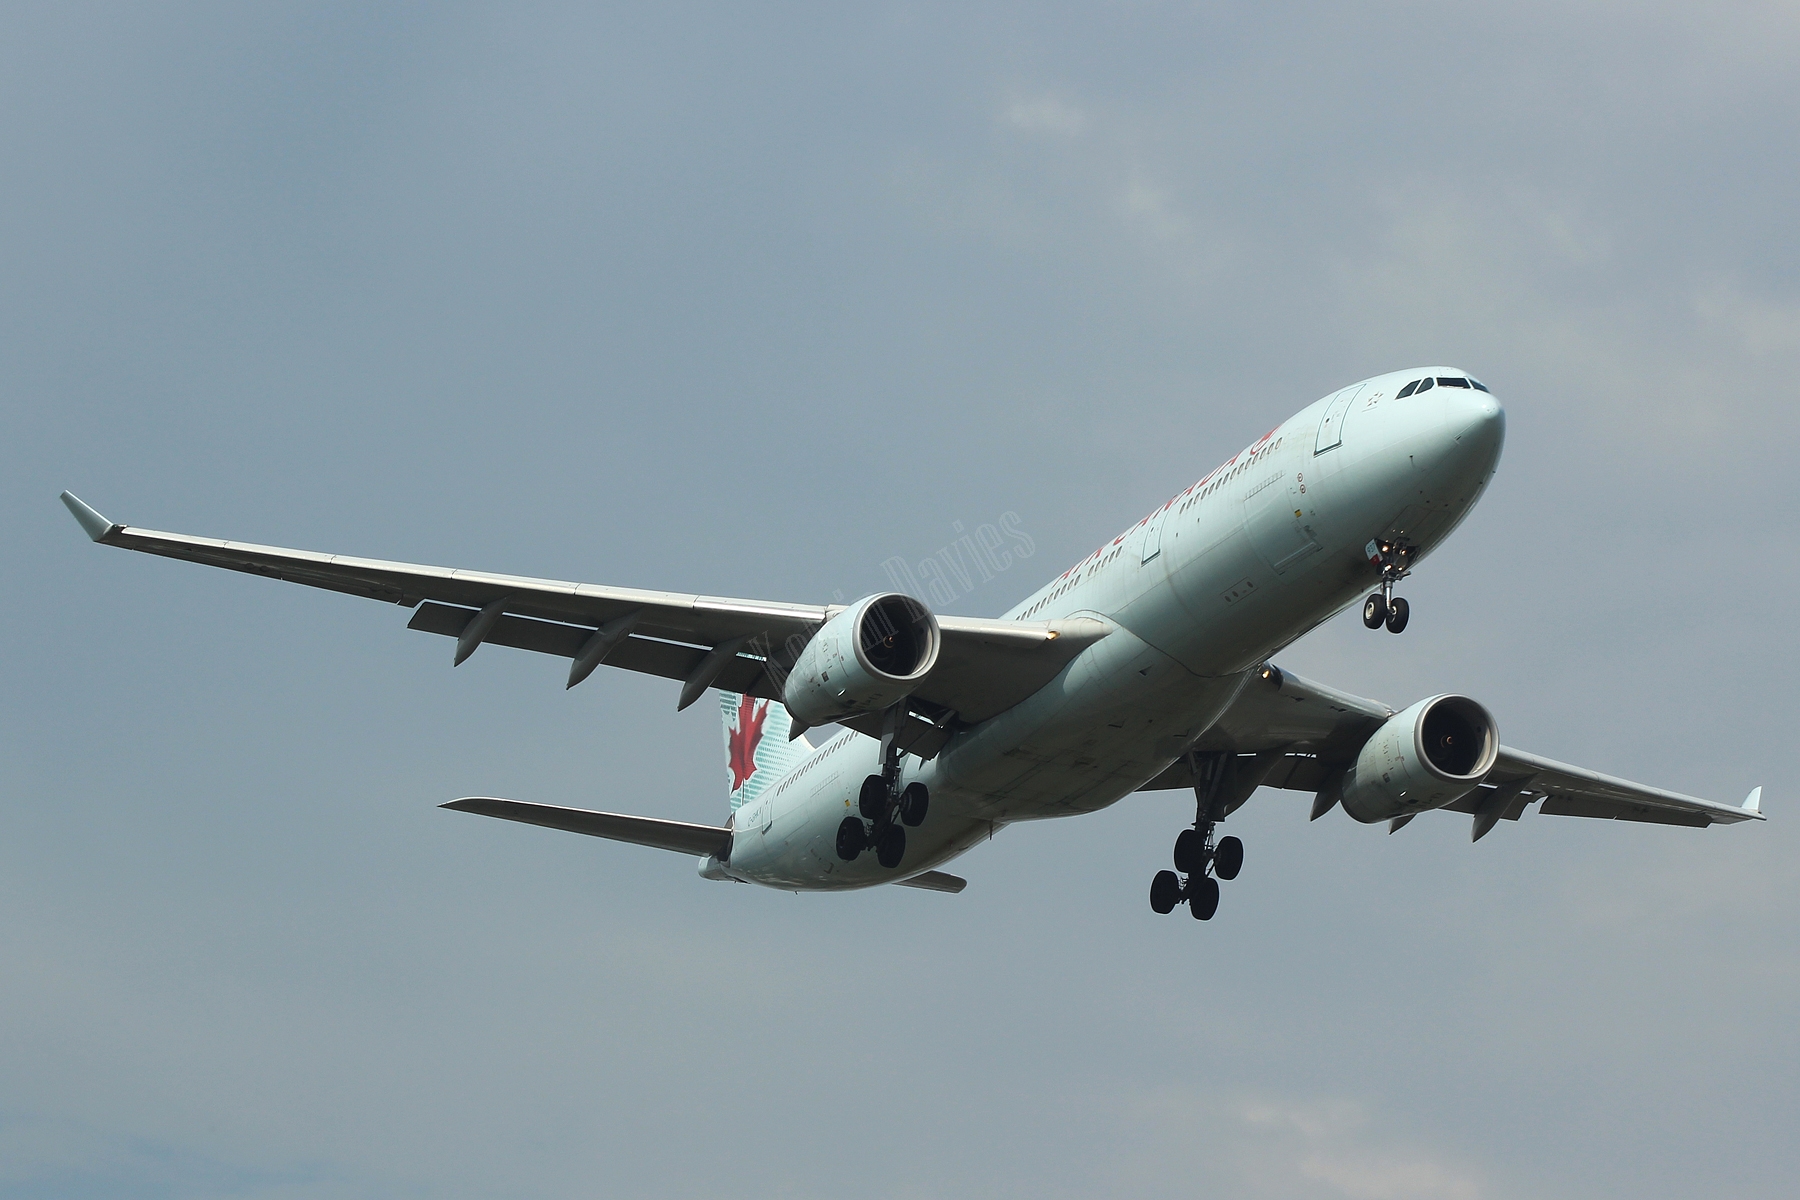 Air Canada A330 C-GHKX